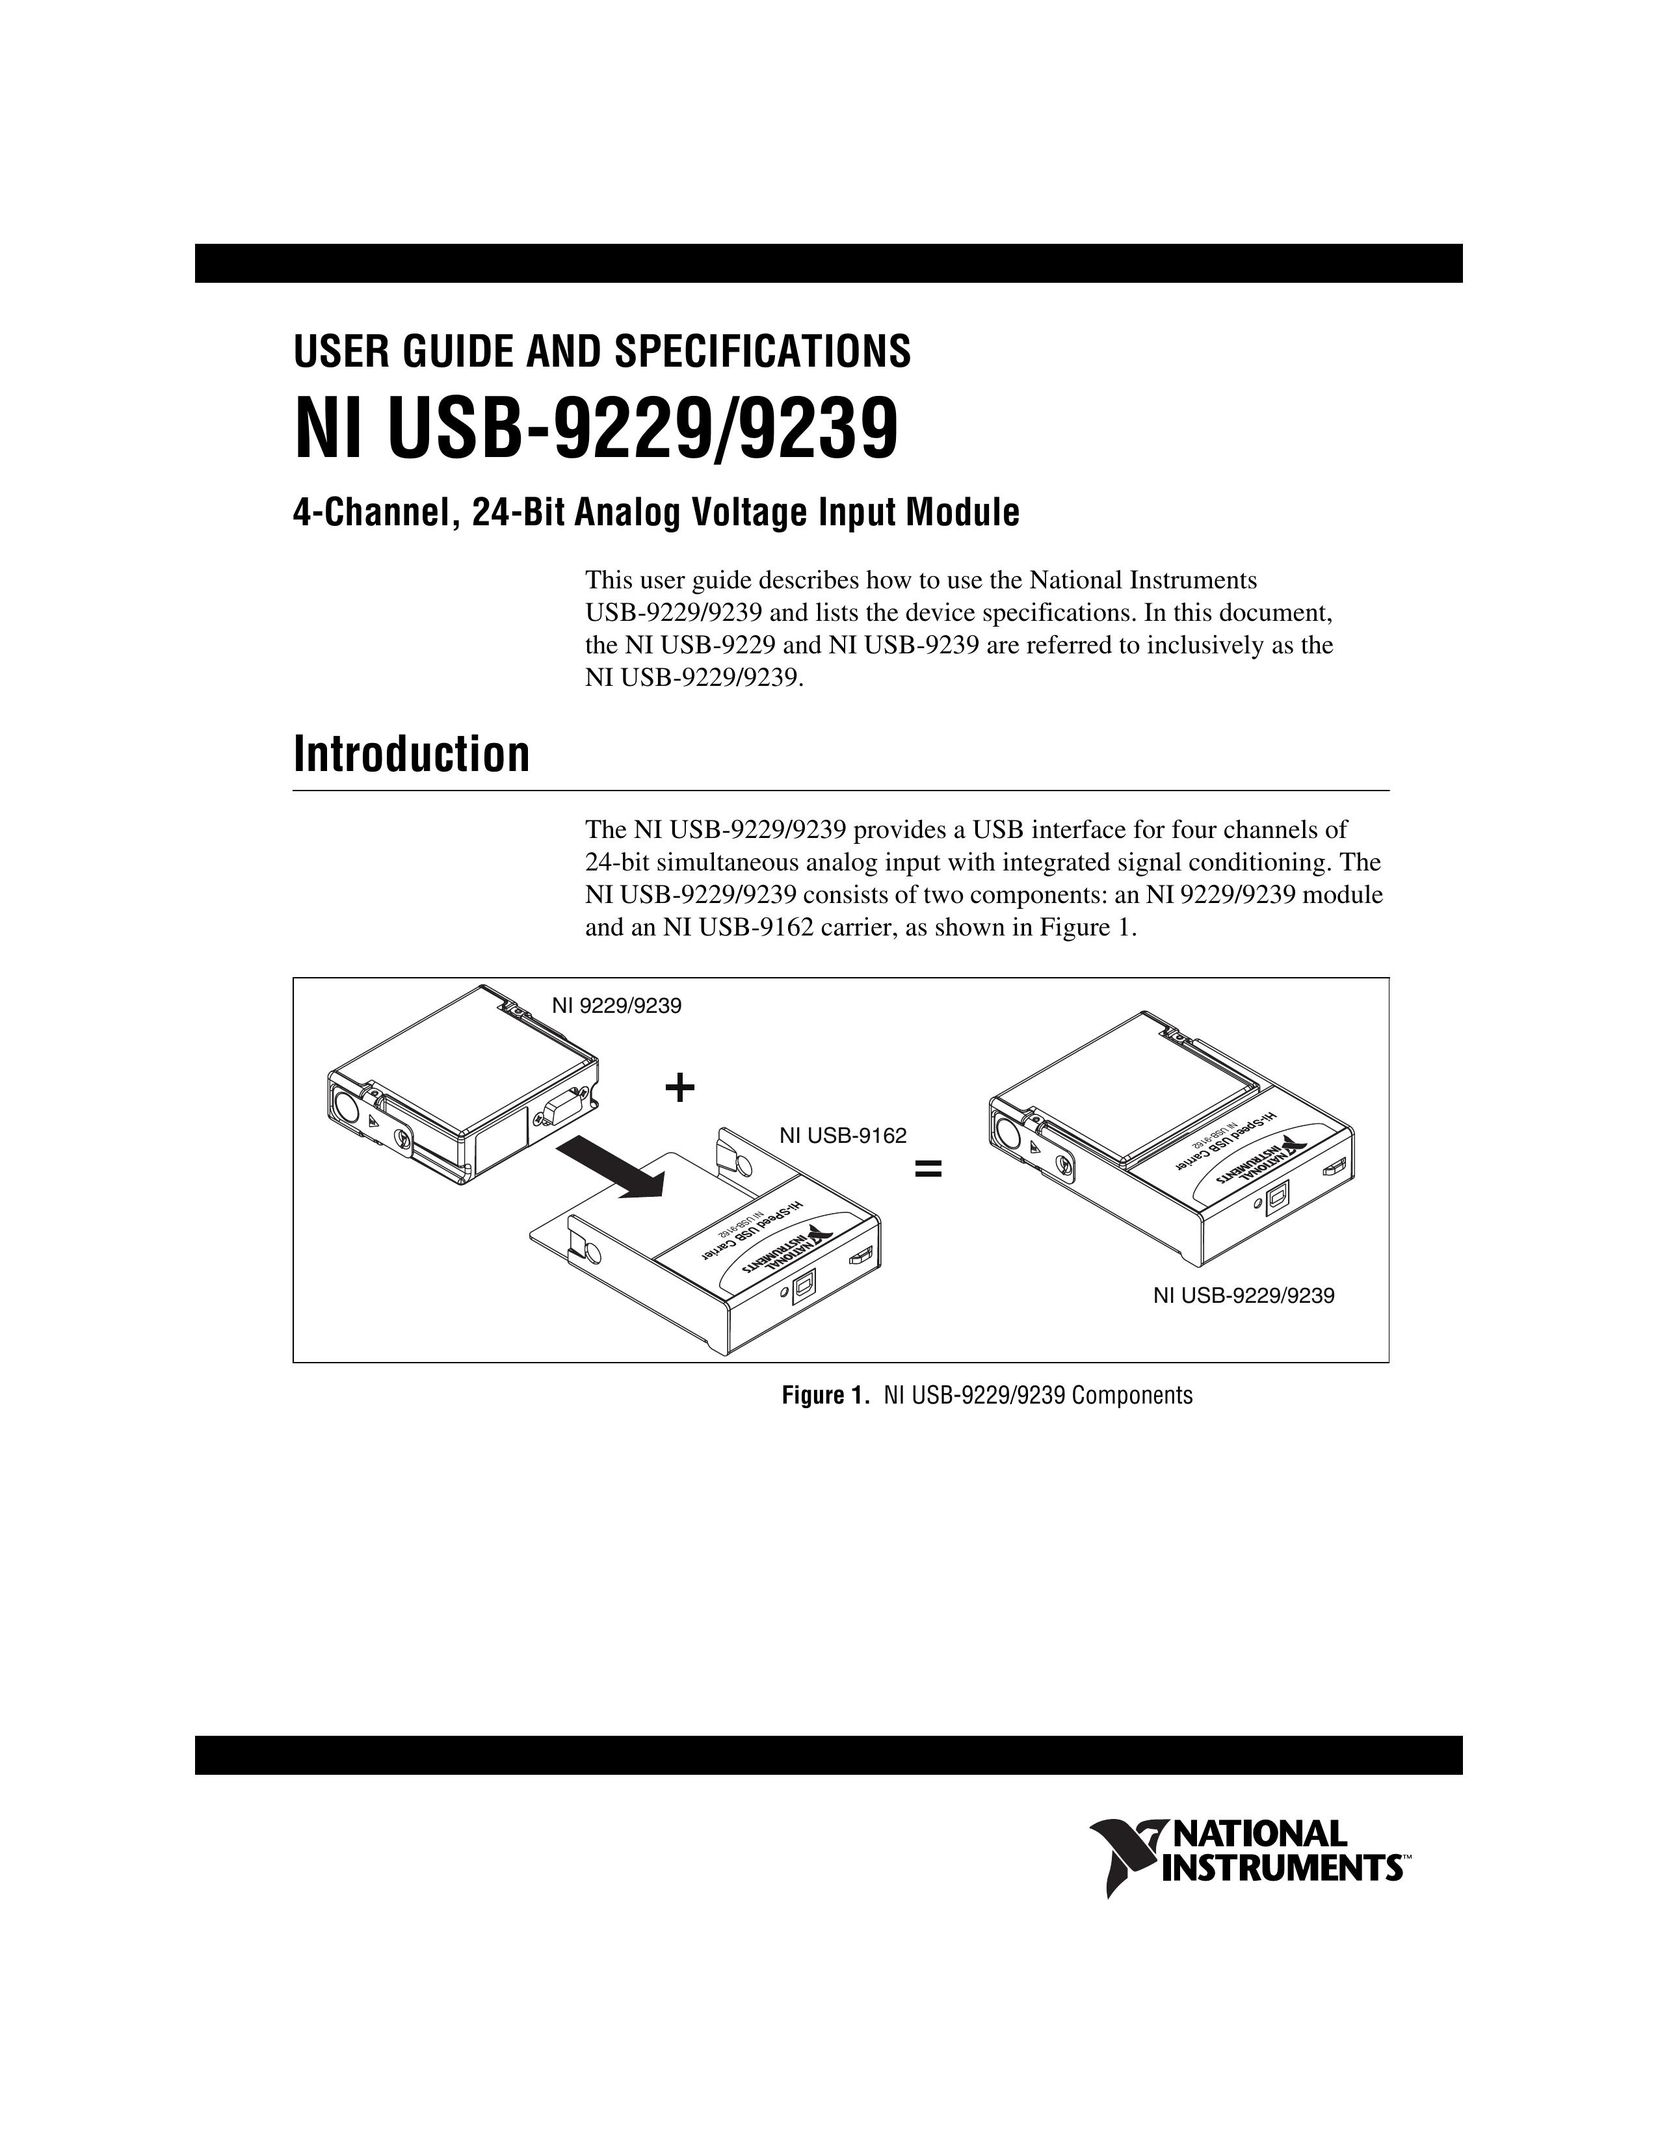 National Instruments NI USB-9239 Computer Drive User Manual